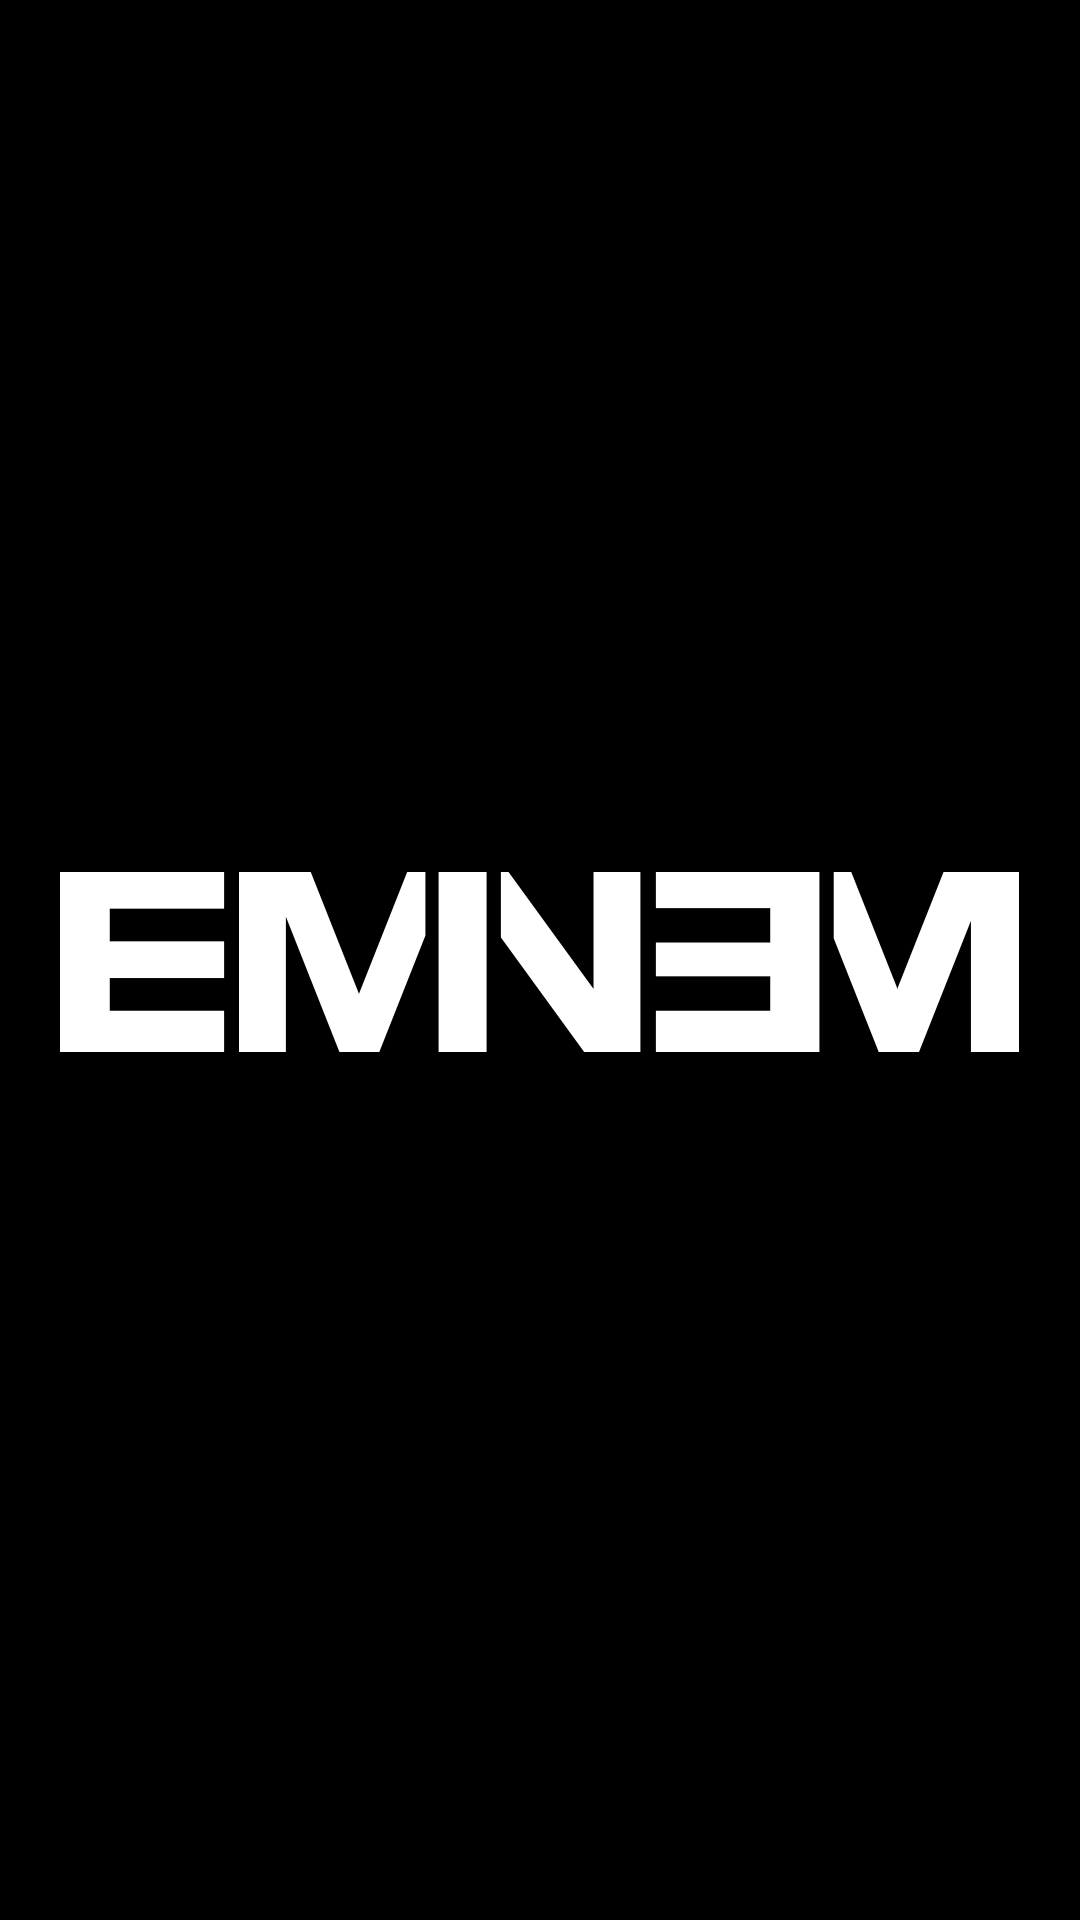 Wallpaper Puter Eminem Hip Hop On